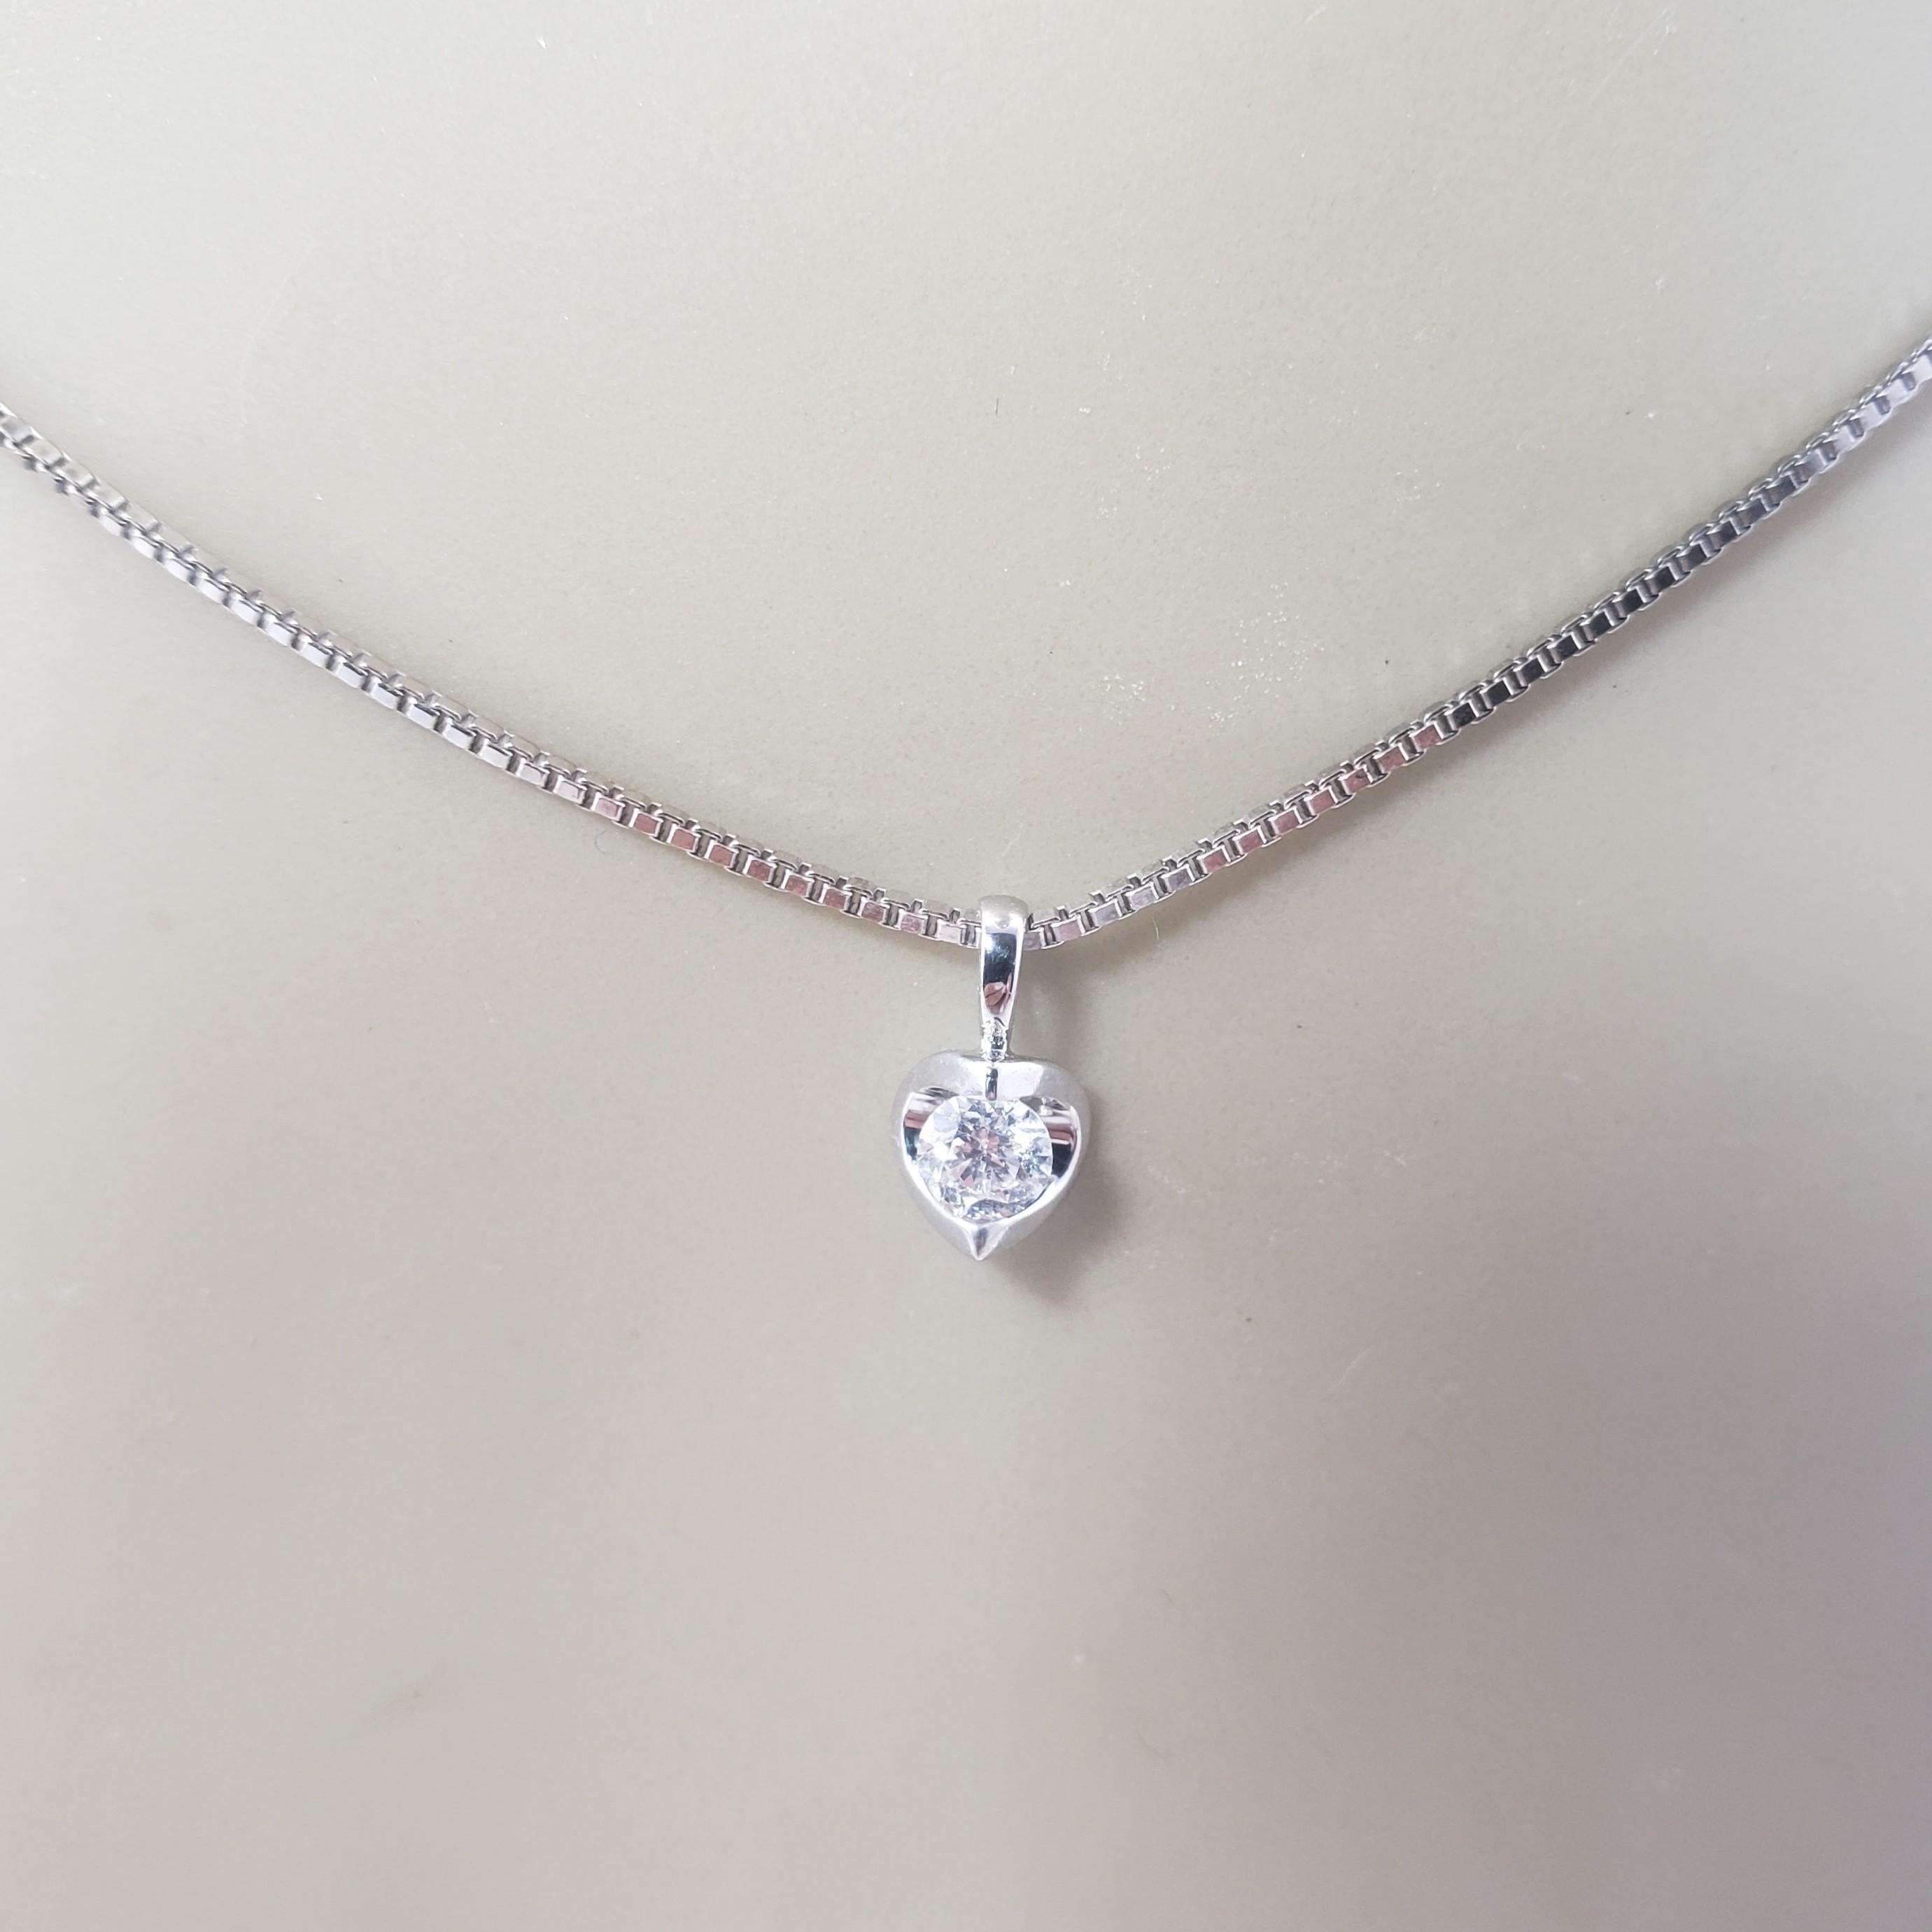 Vintage 14 Karat White Gold Diamond Pendant Necklace-

Ce charmant pendentif solitaire présente un diamant rond de taille brillant serti dans de l'or blanc classique 14K. Suspendu à une chaîne classique.

Poids total approximatif des diamants : 0,18